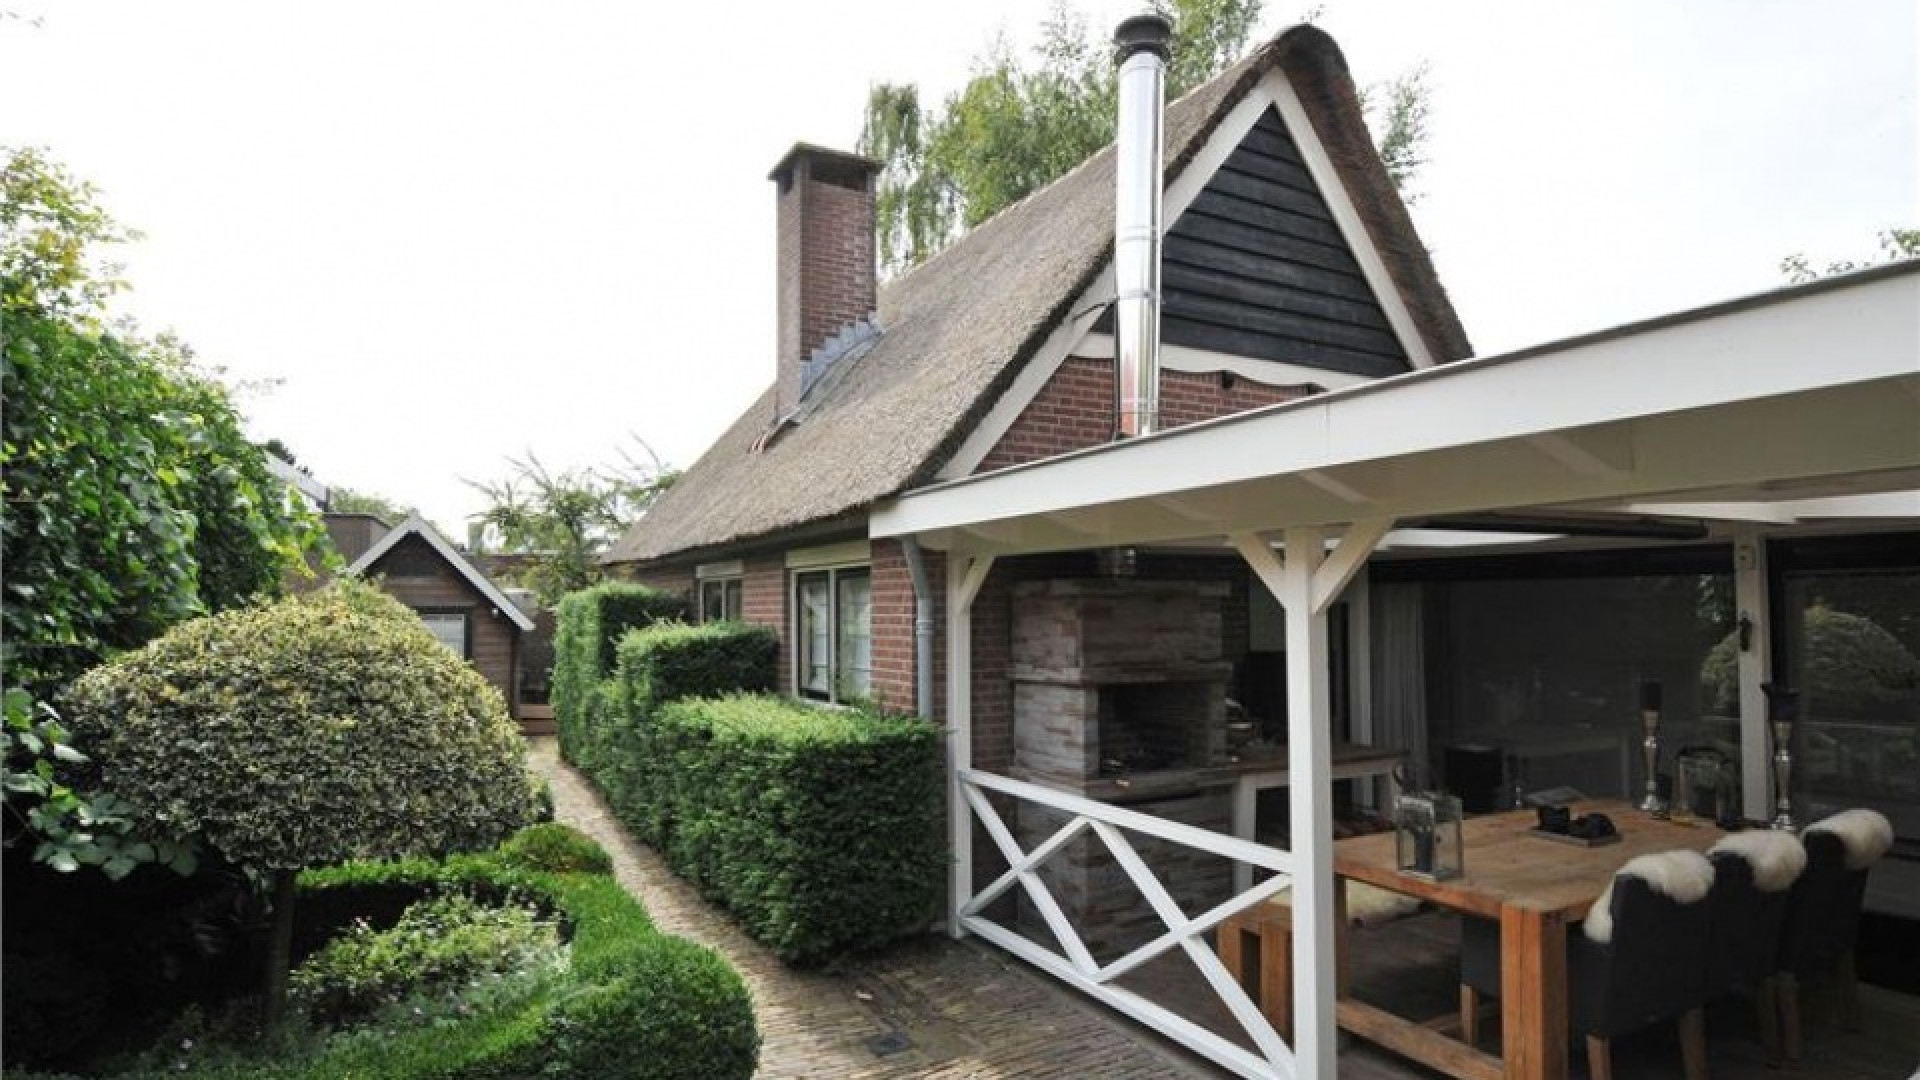 Rosanna Kluivert verkoopt haar villa met verlies. Zie foto's